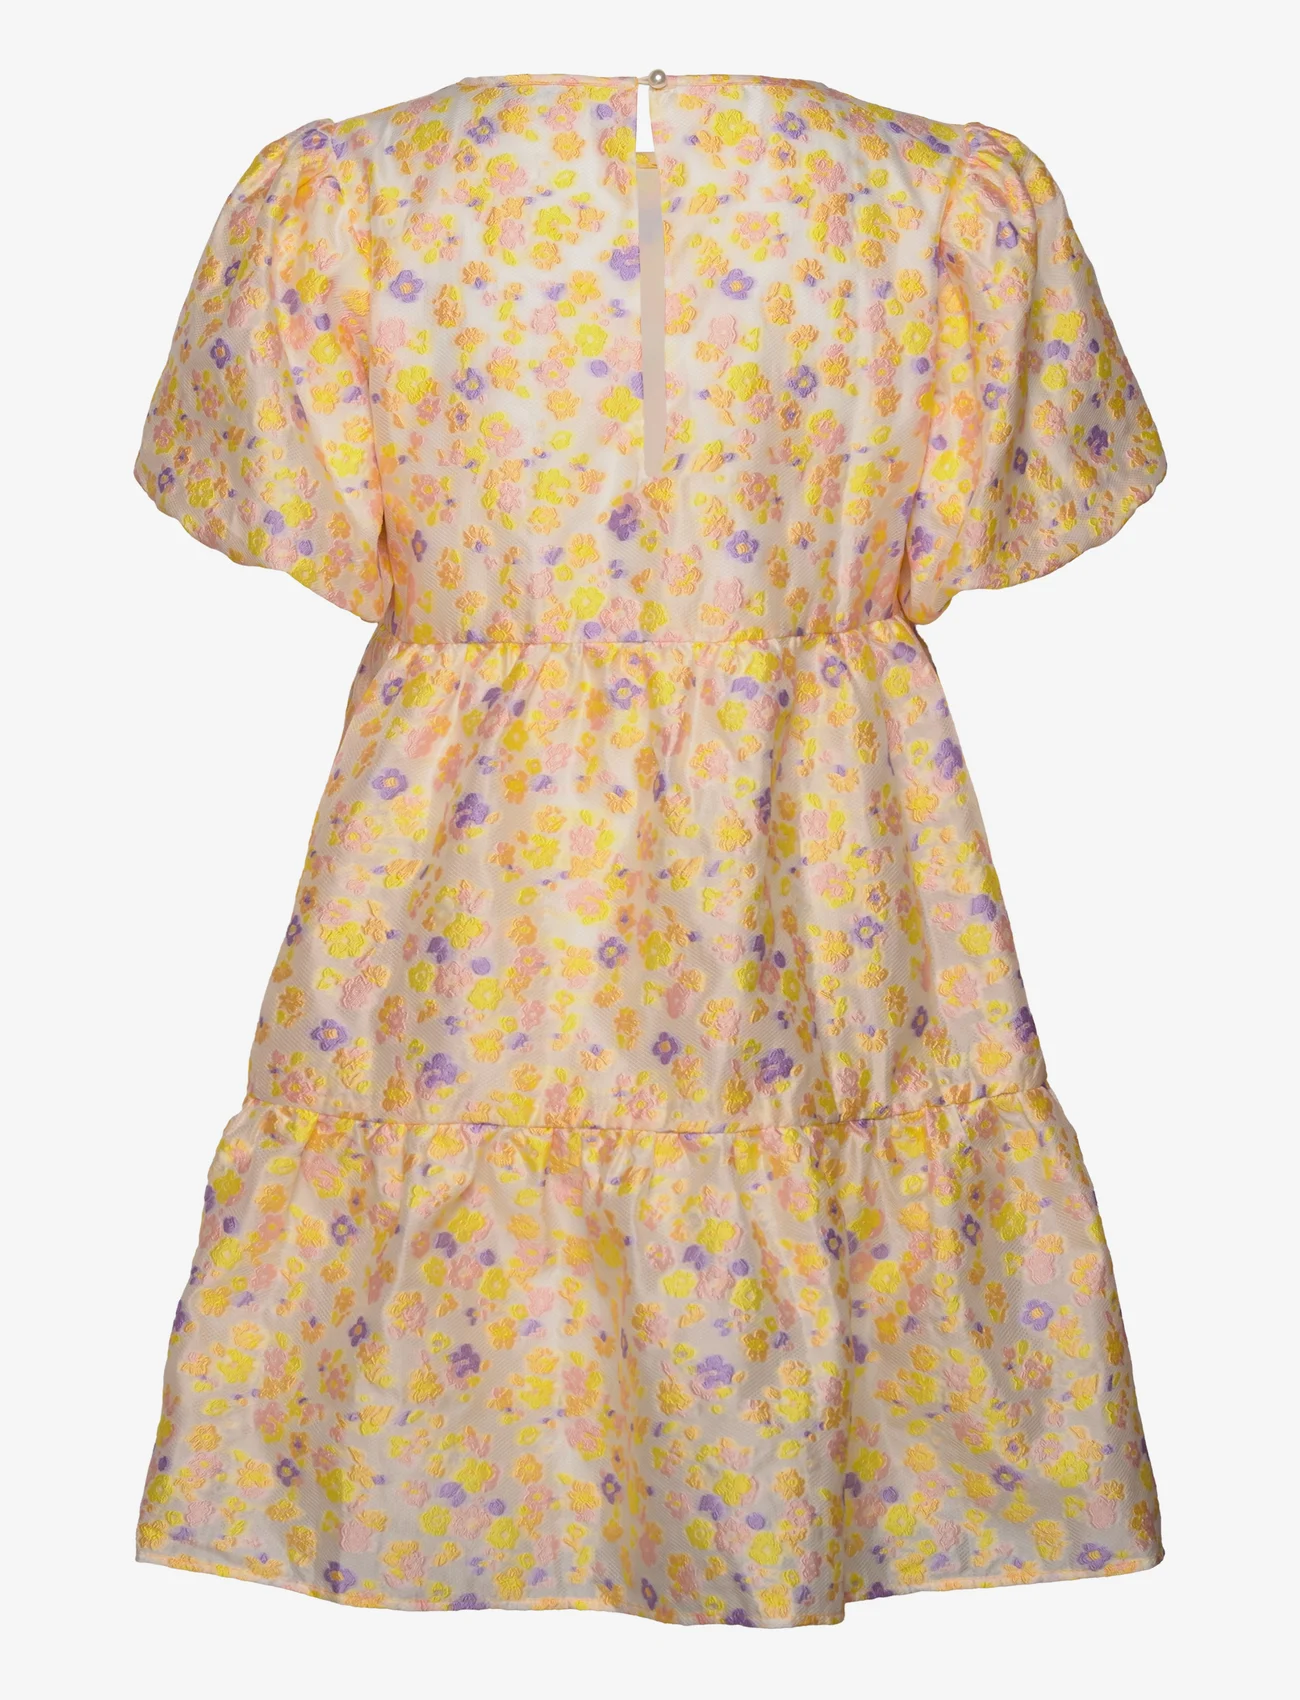 A-View - Flora dress - odzież imprezowa w cenach outletowych - creme w yellow, rose & purple - 1